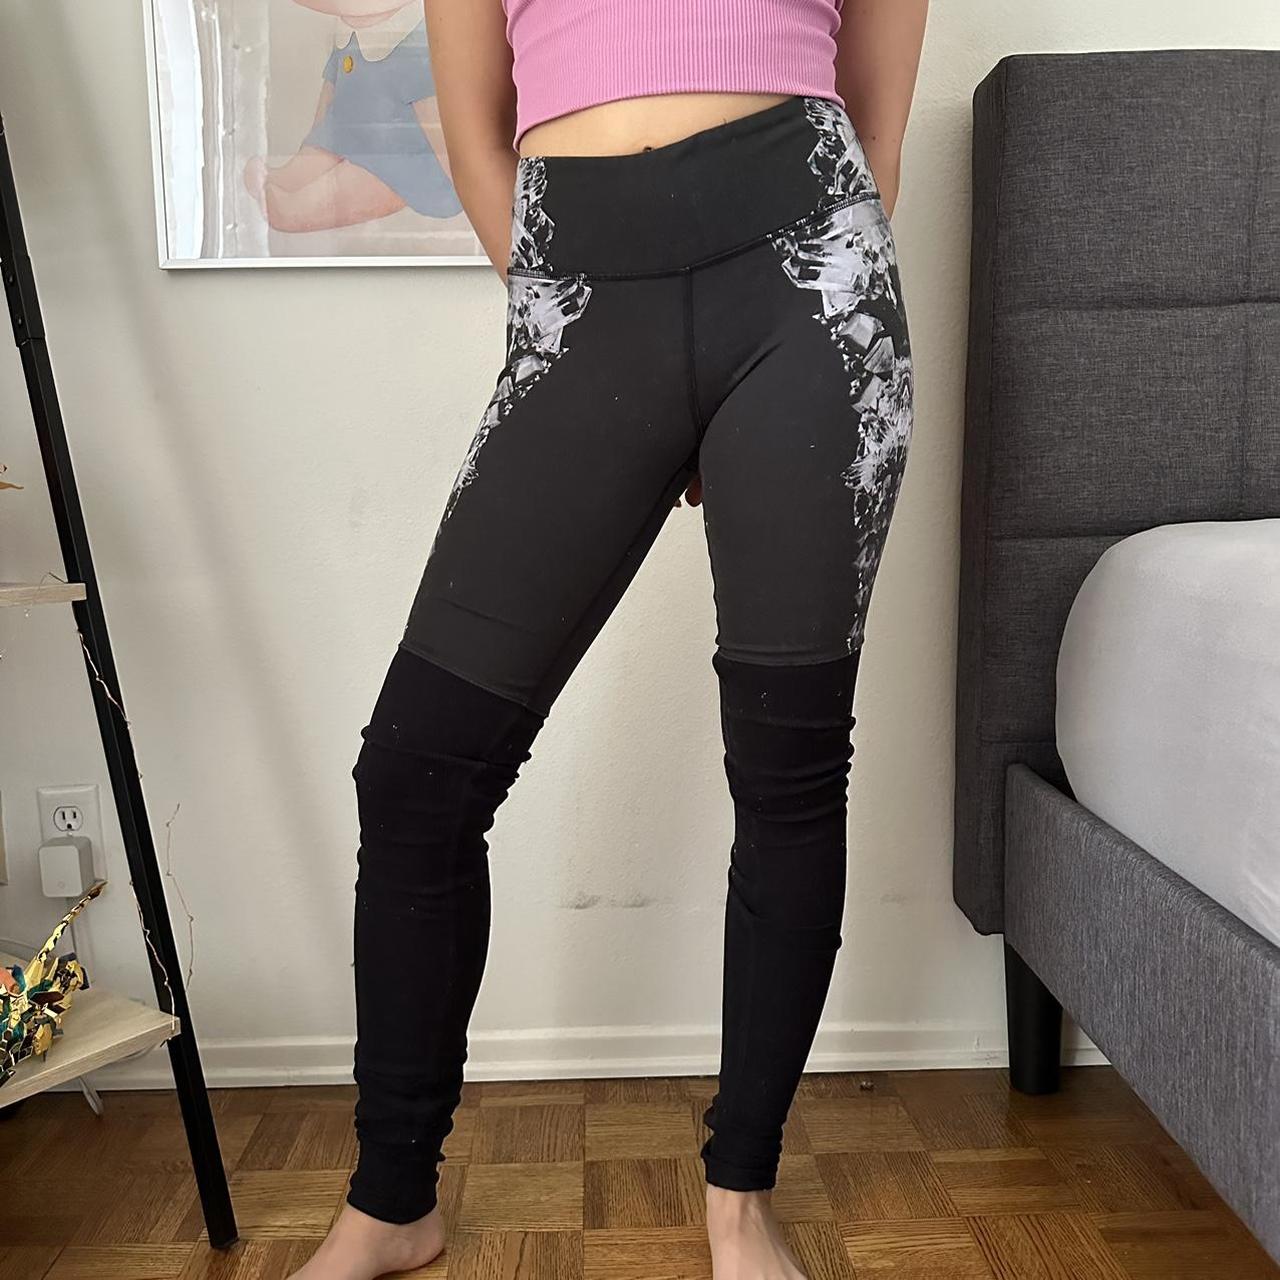 Black/gray Alo yoga goddess leggings